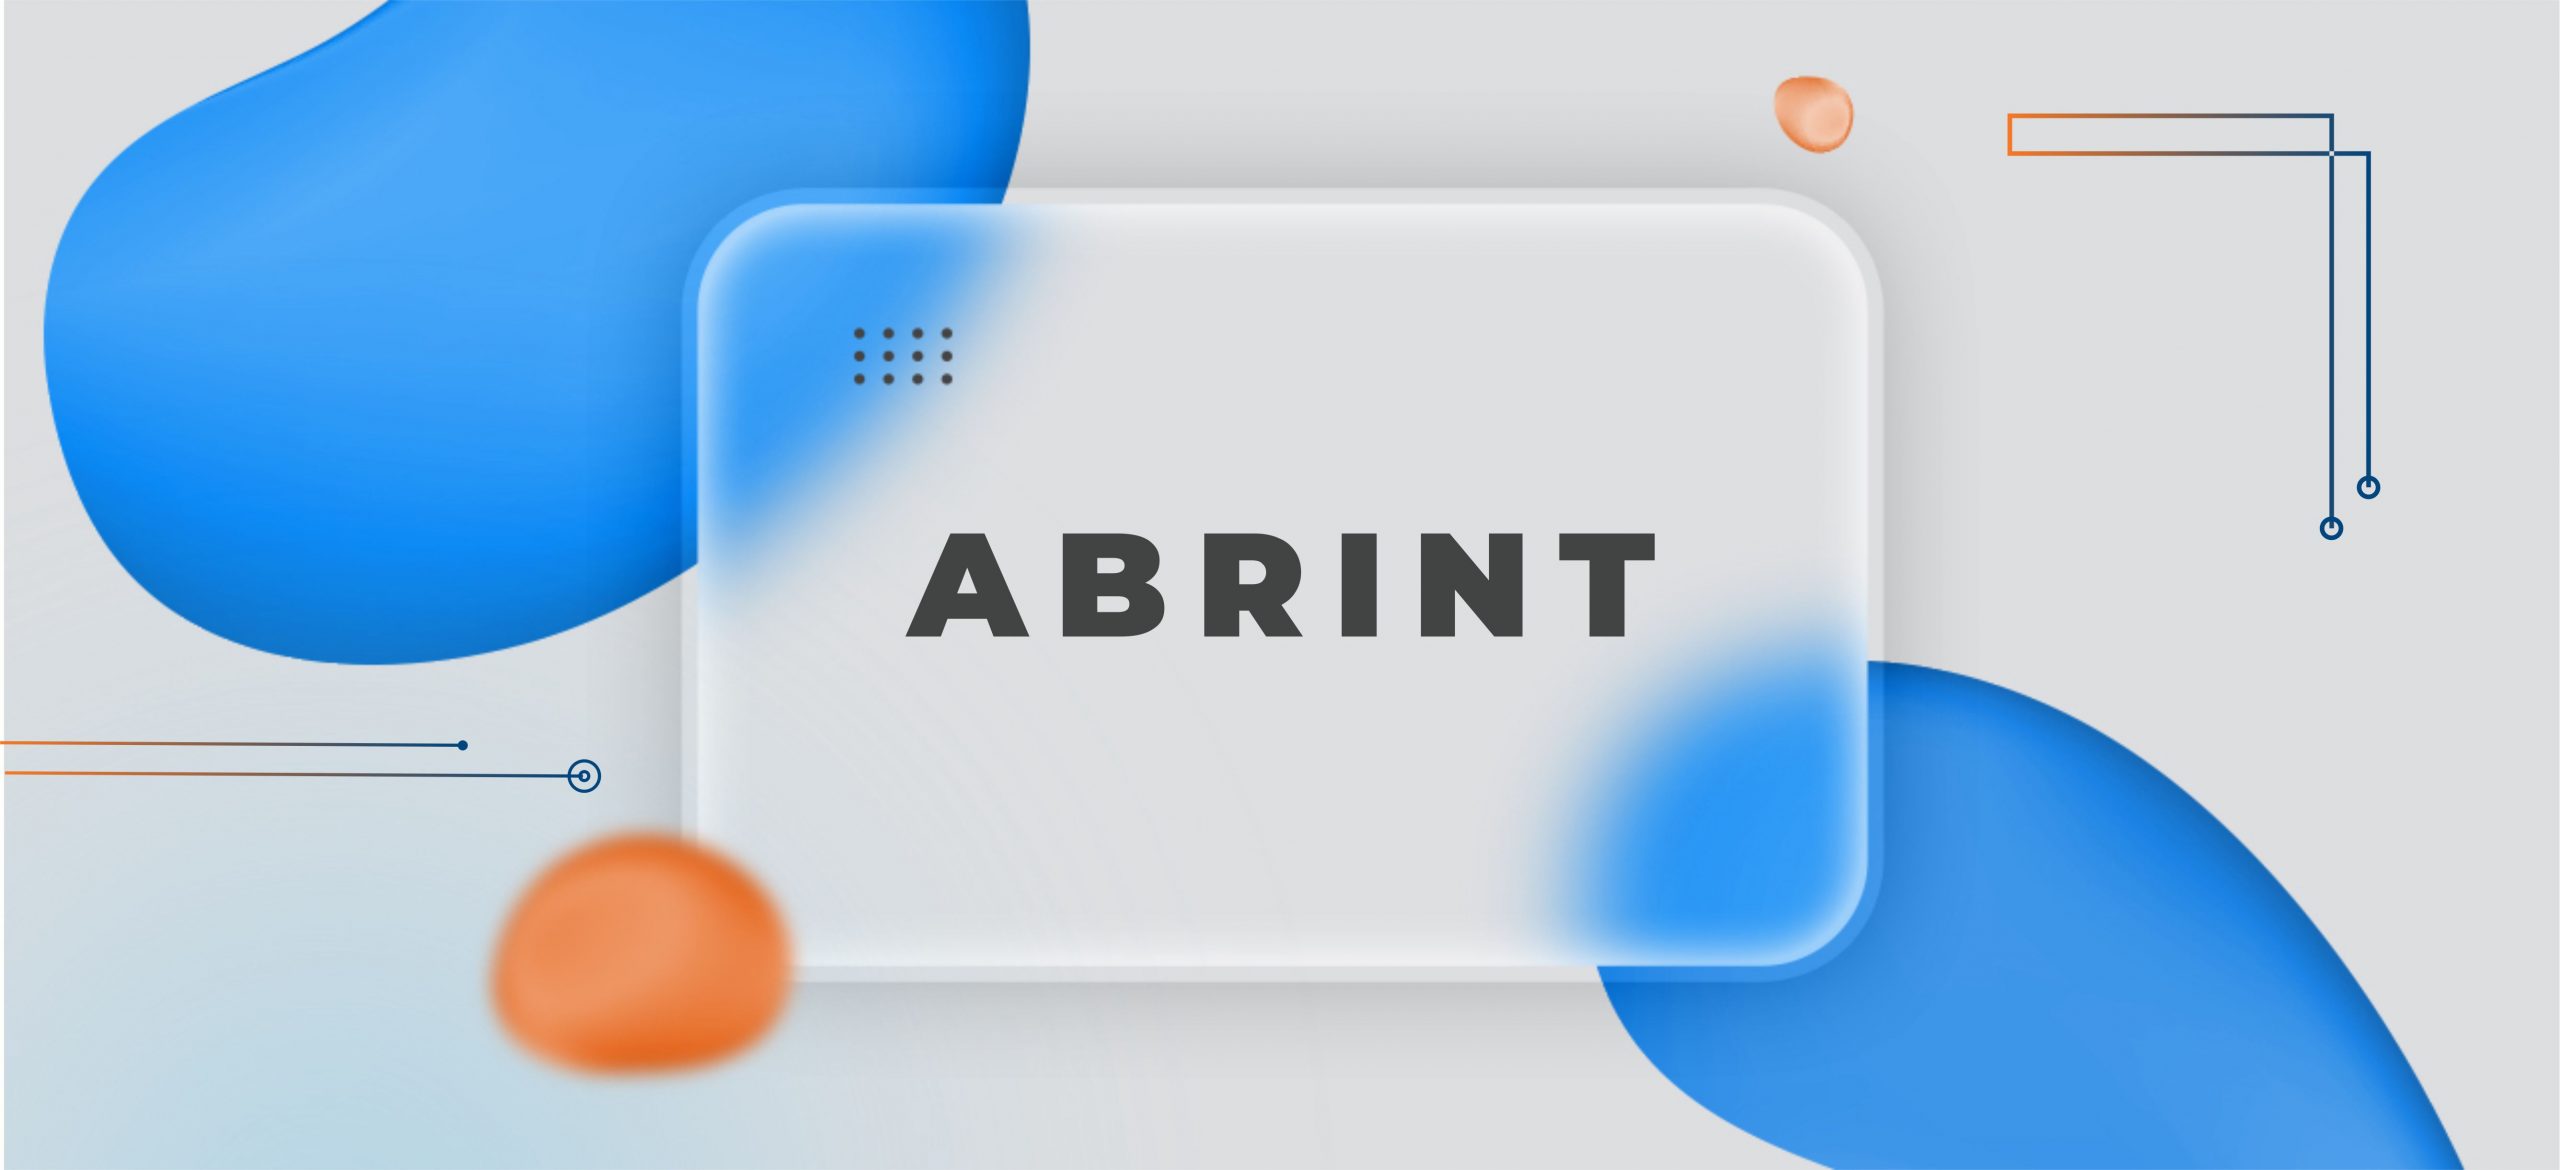 ABRINT participou do webinar Como Monetizar a Oferta de Serviços de Telecom com SD-WAN Seguro